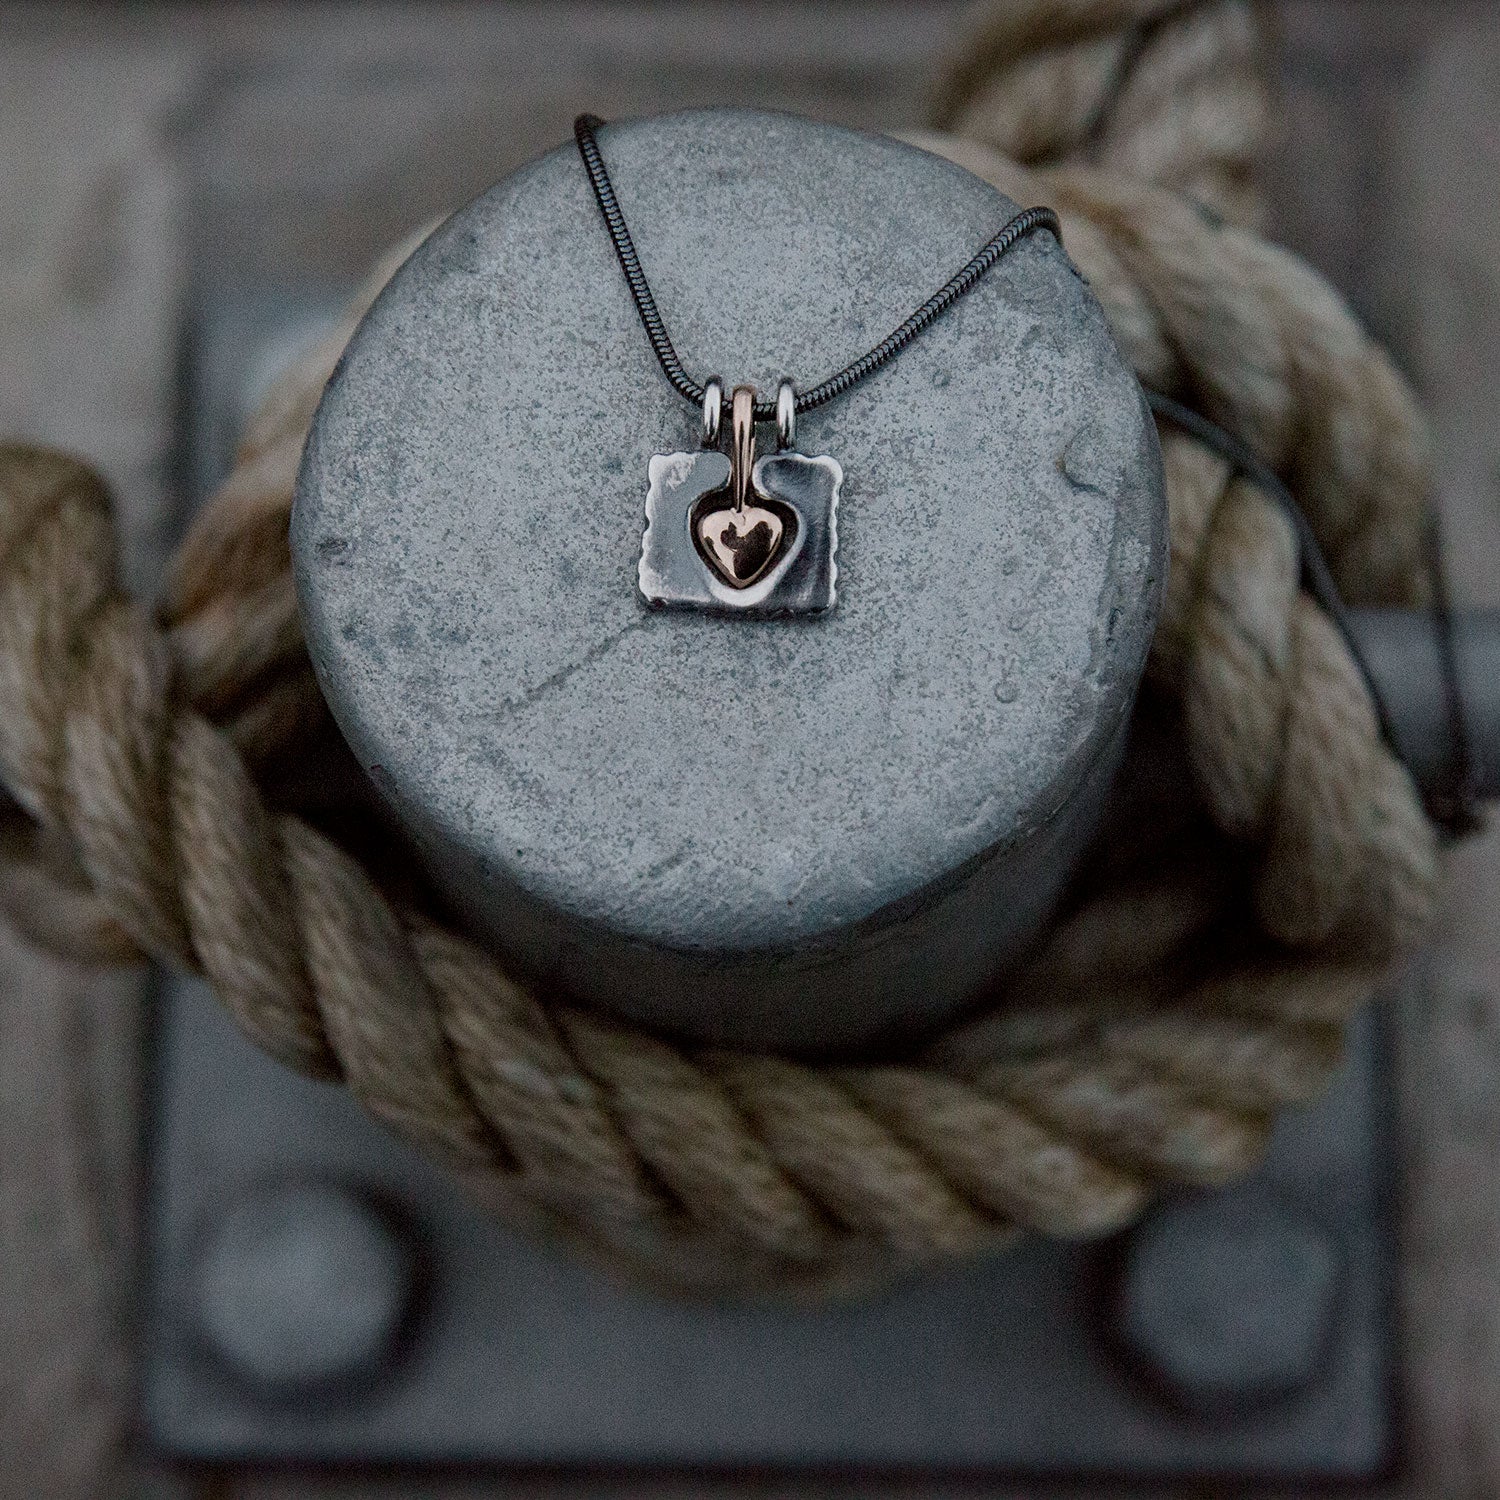 HÅLL OM (Embrace) MITT HJÄRTA (My heart) necklace